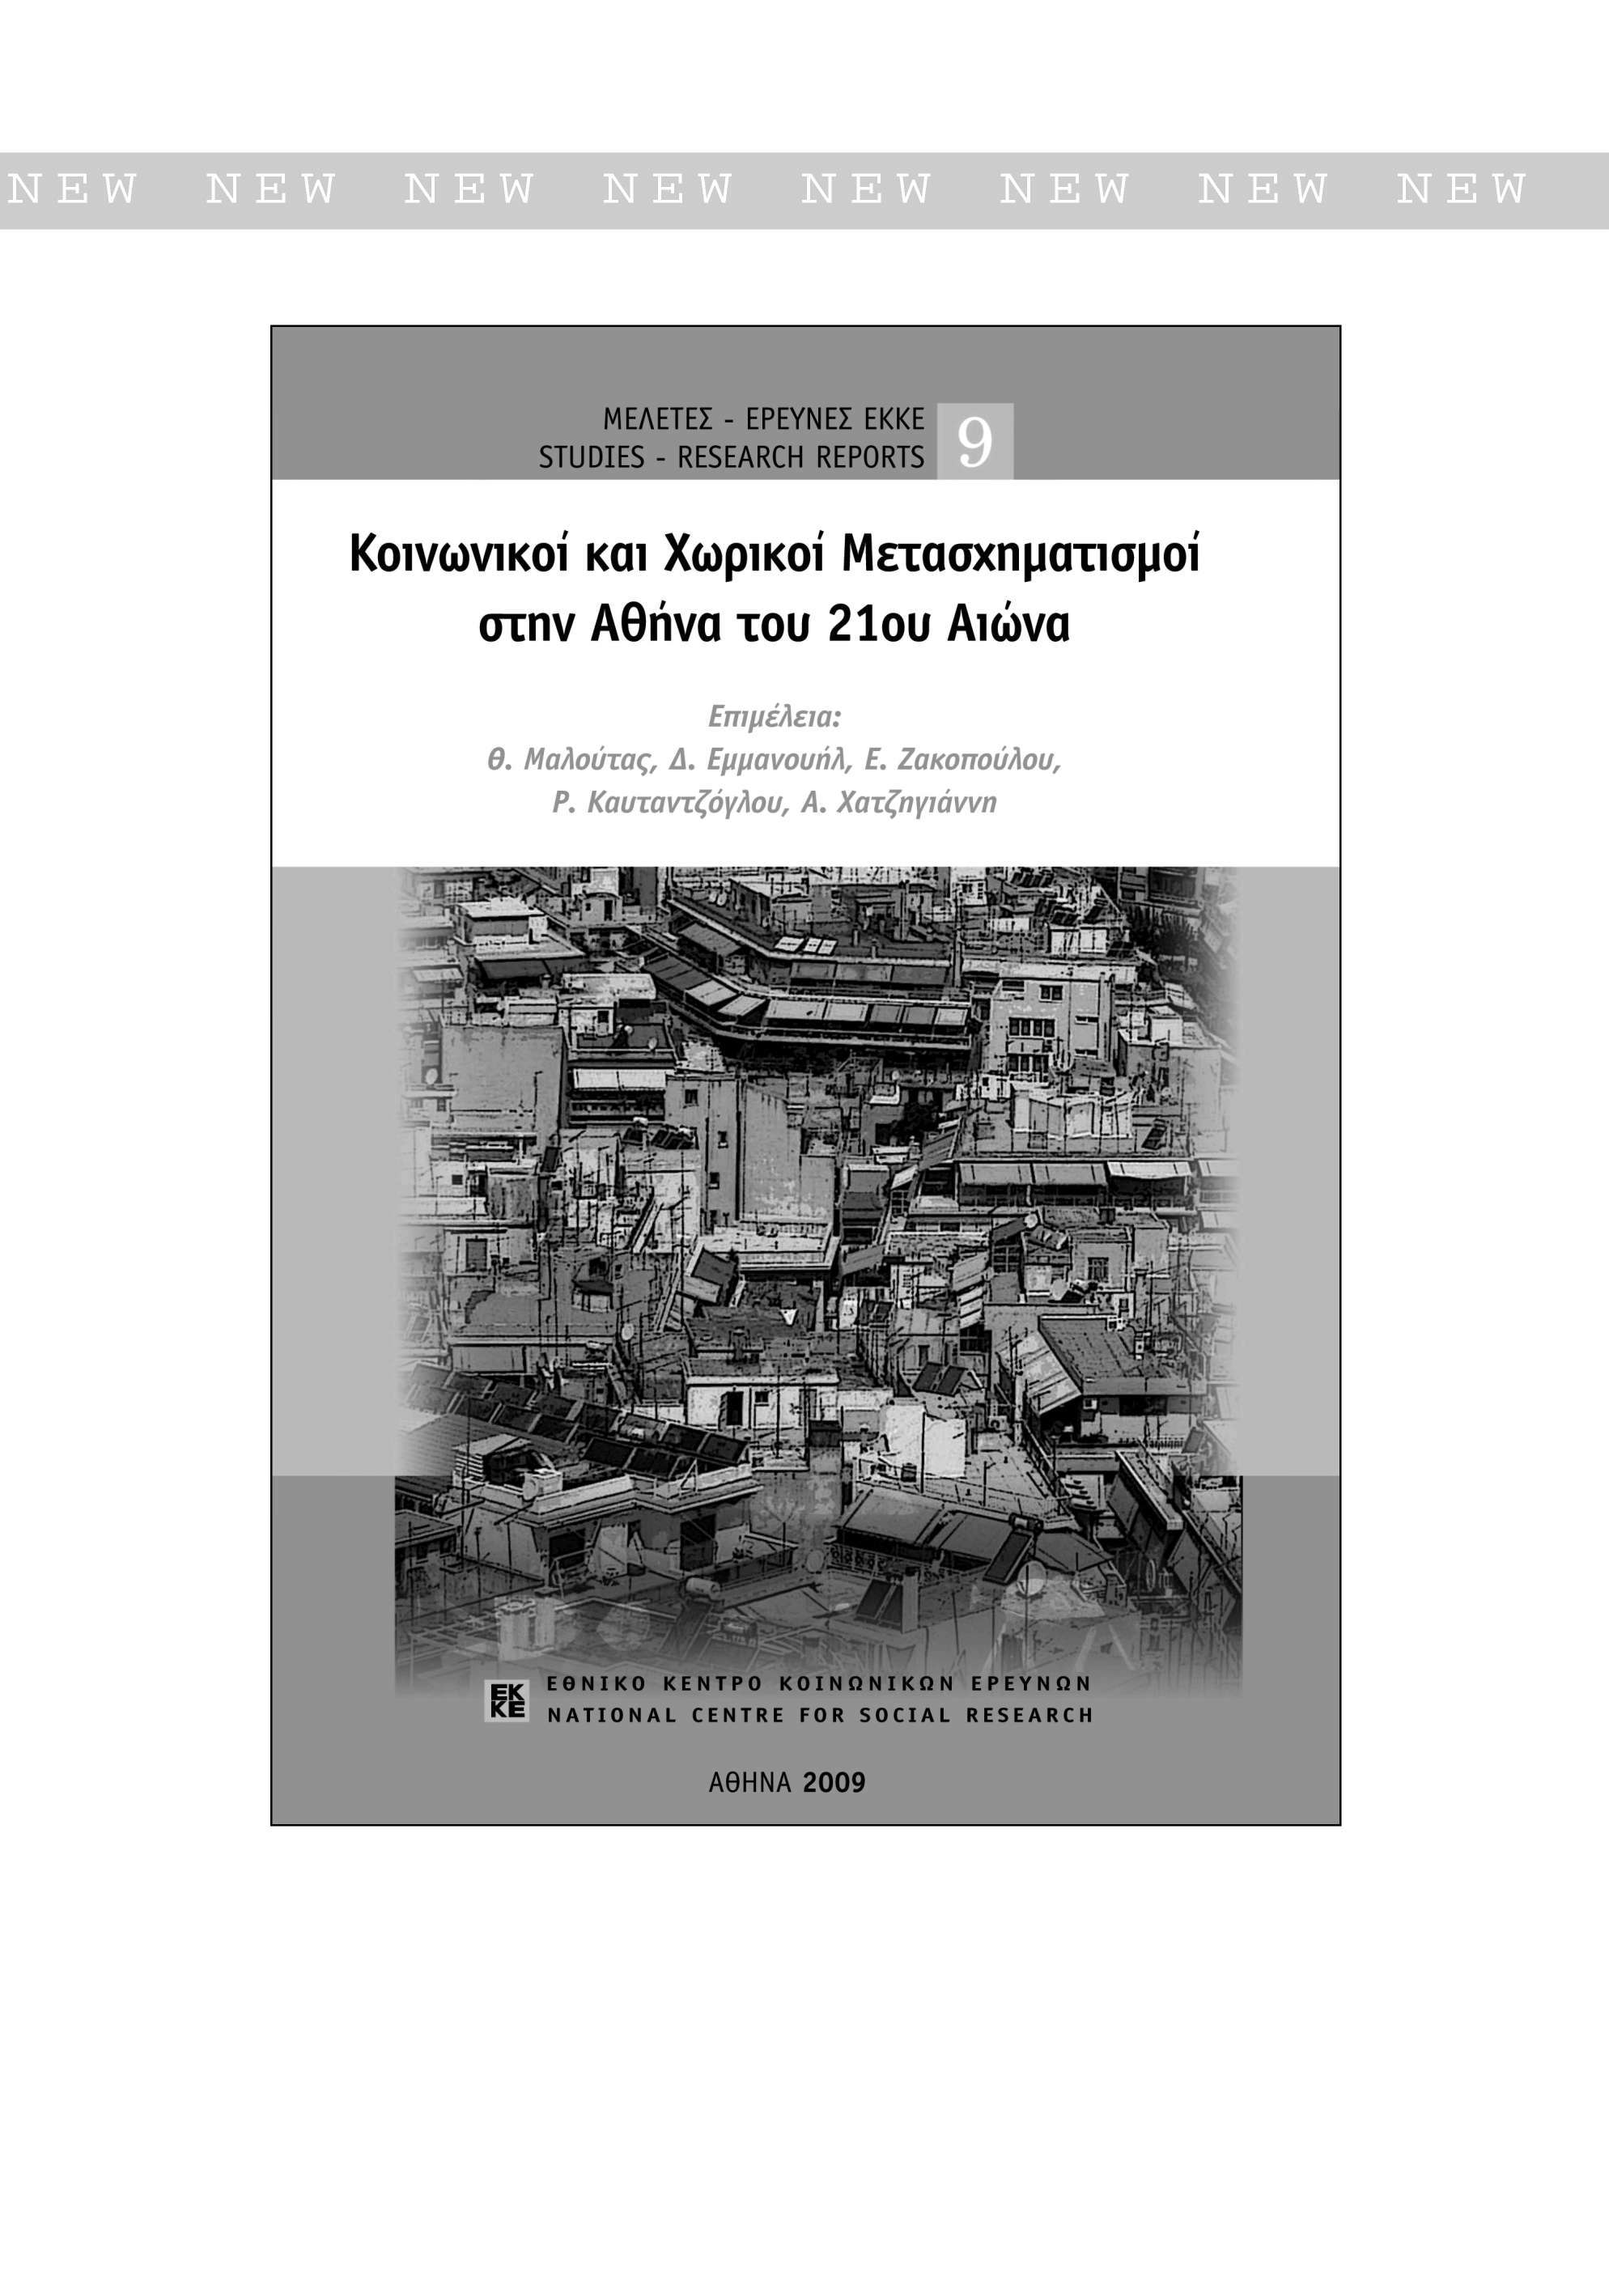 NEW NEW NEW NEW NEW NEW NEW NEW ΜΕΛΕΤΕΣ - ΕΡΕΥΝΕΣ ΕΚΚΕ STUDIES - RESEARCH REPORTS Κινωνικί και Χωρικί Μετασχηματισμί στην Αθήνα τυ 21υ Αιώνα